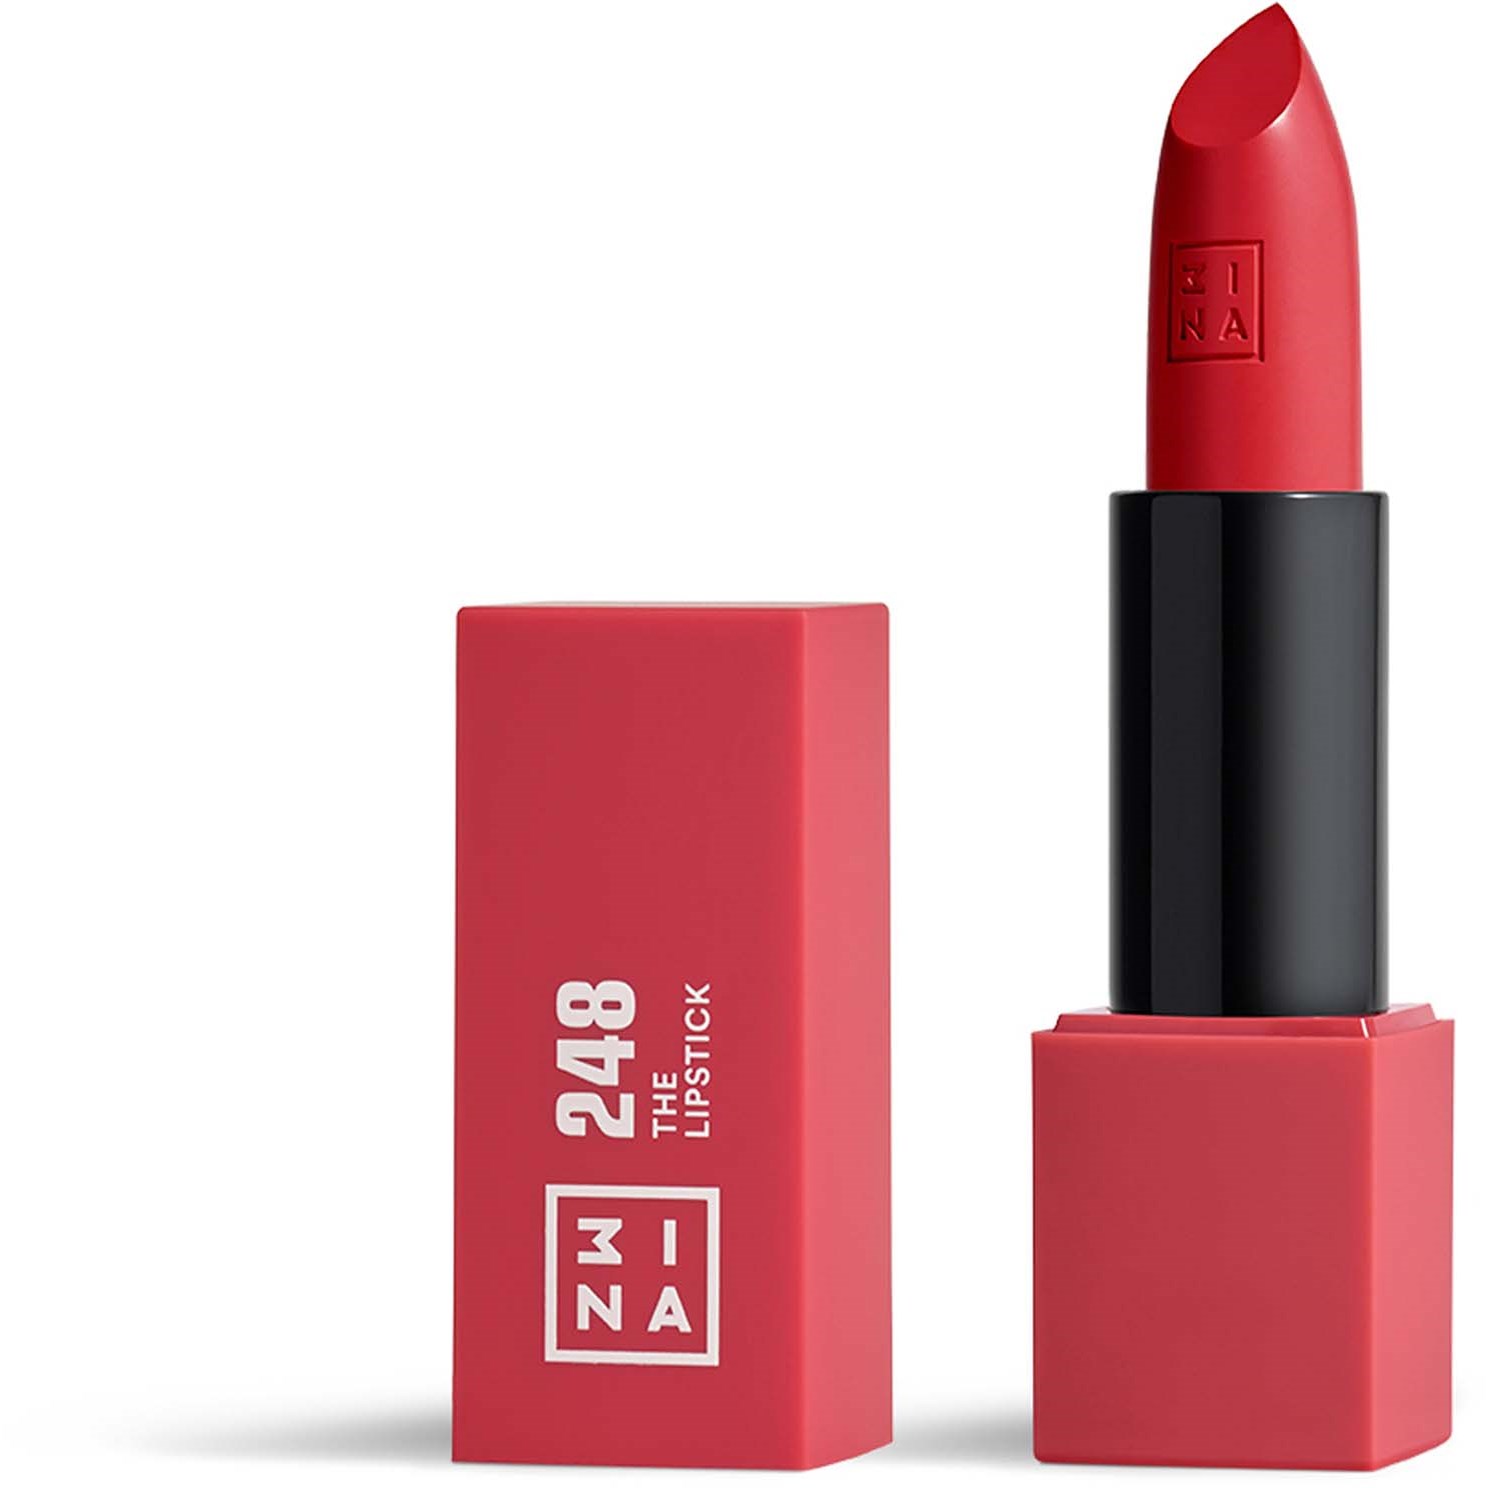 3INA The Lipstick 248